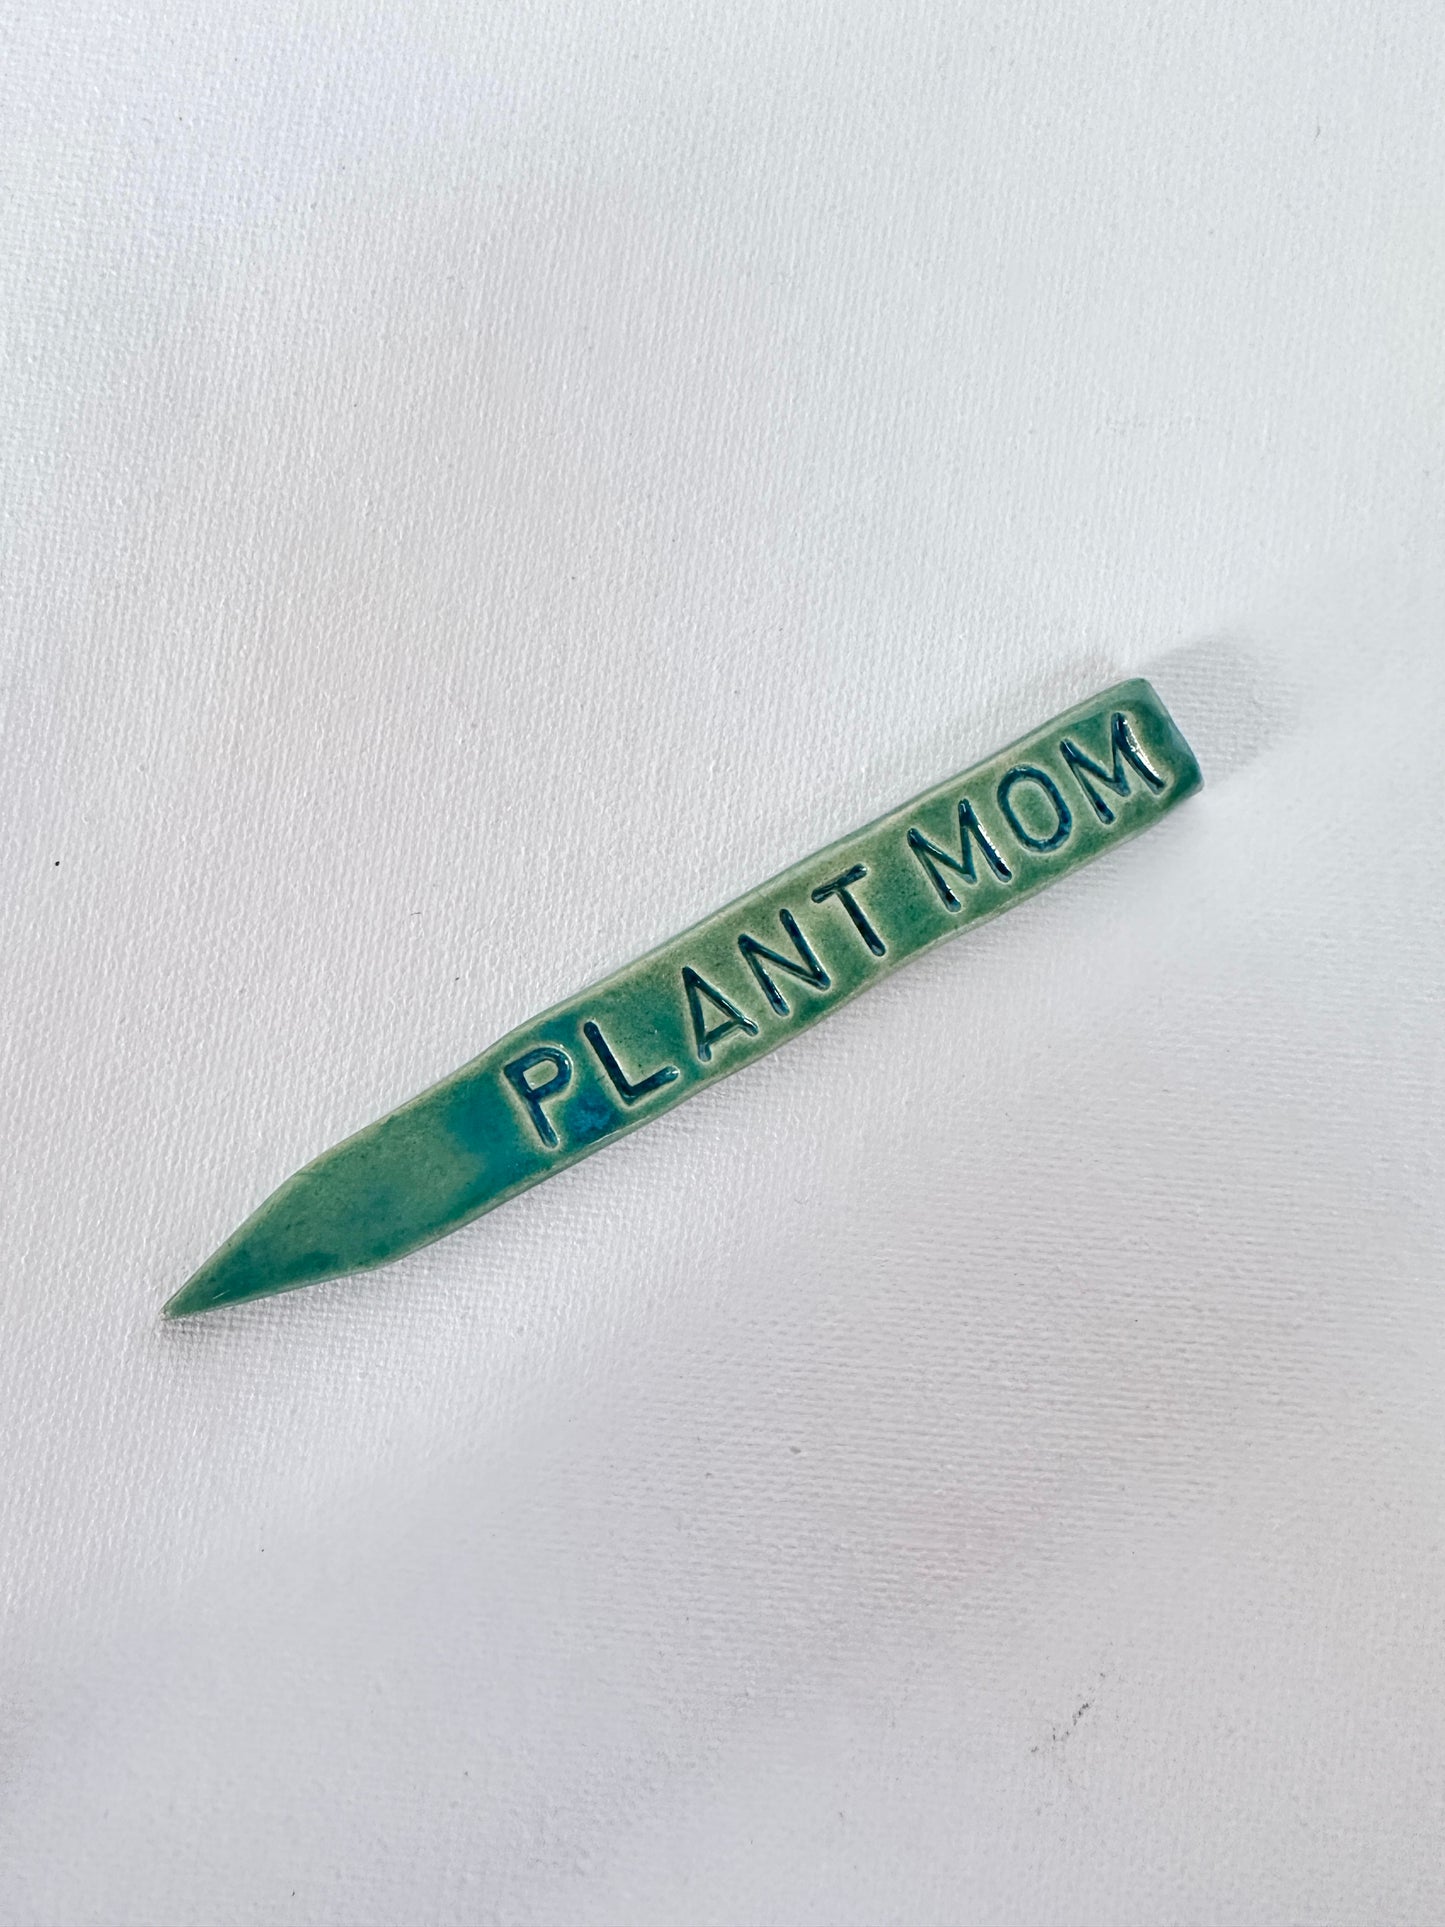 ‘PLANT MOM’ herb stake